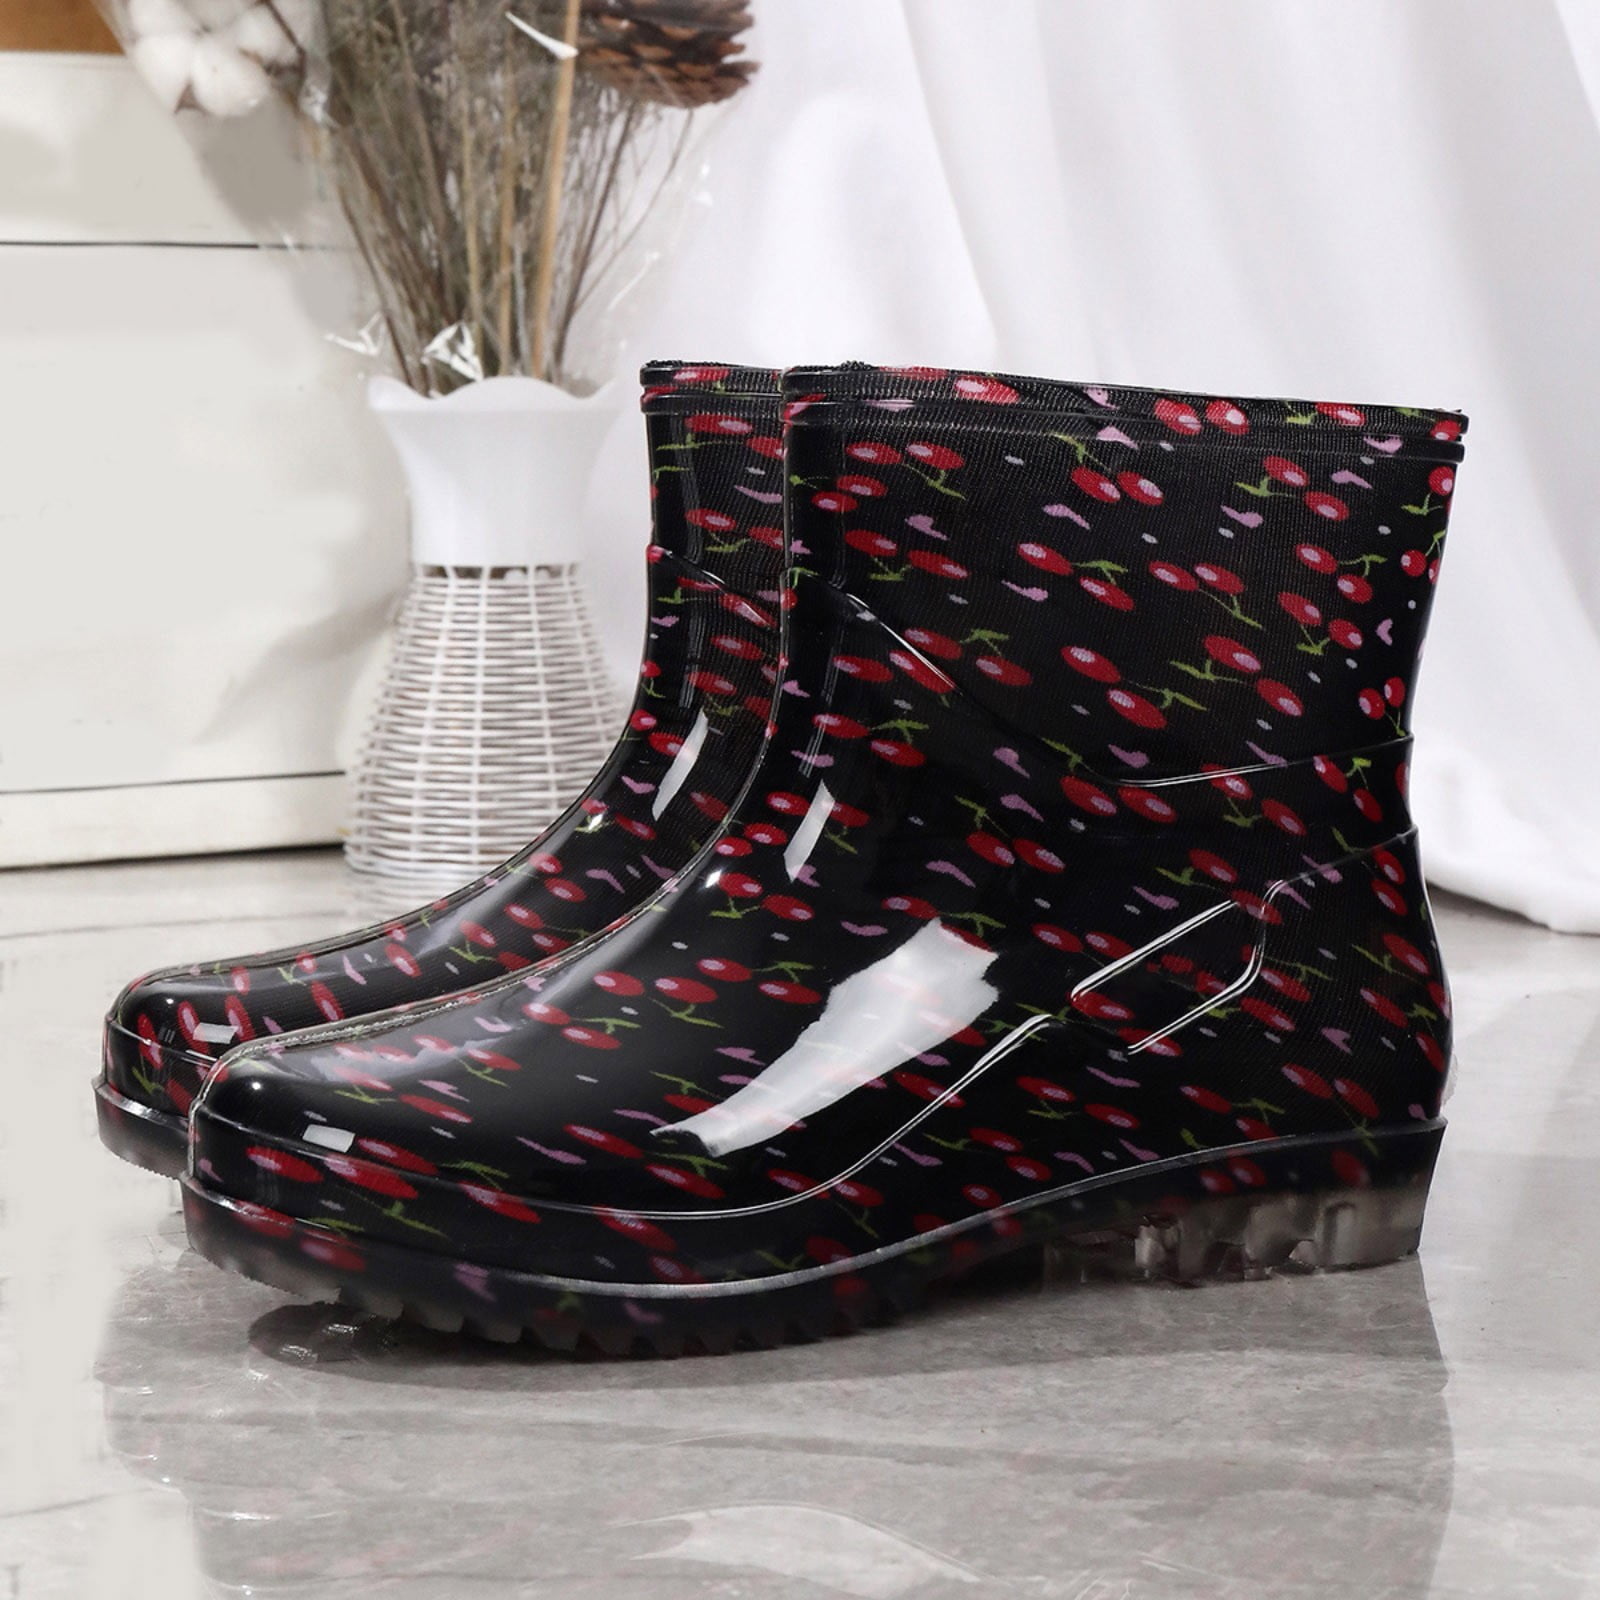 YOLAI Top Rubber Baby Boots Water Women Rain Boot Rainproof Shoe ...